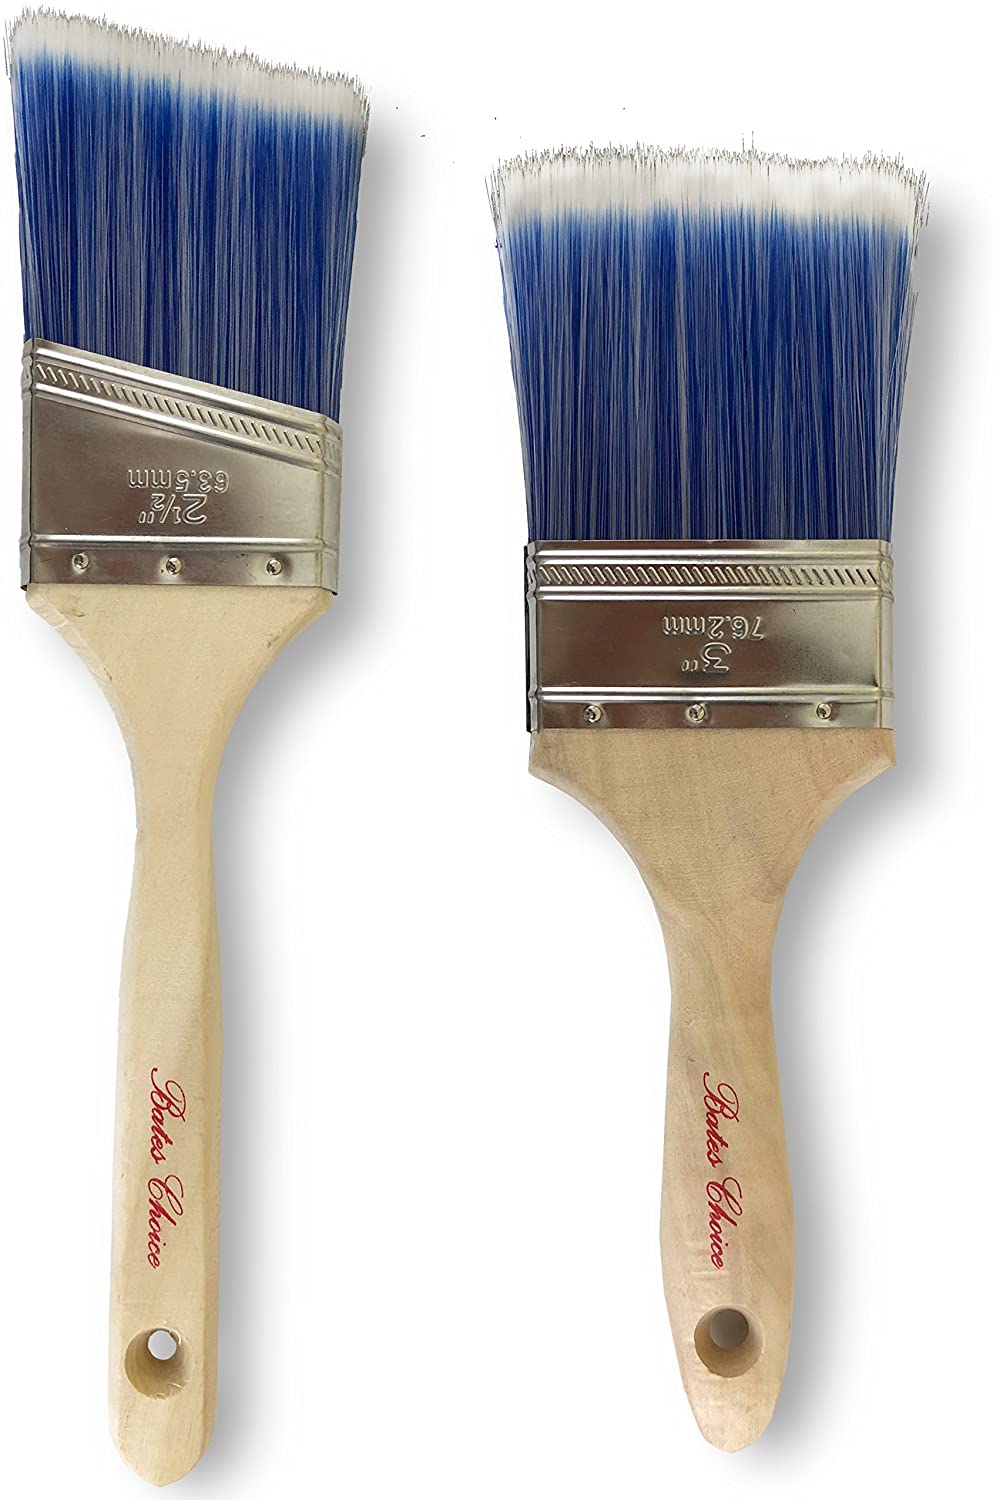 Bates Paint Brushes - 4 Pack, Wood Handle, Paint Brush, Paint Brushes Set,  Professional Wall Brush Set, House Paint Brush, Trim Paint Brush, Sash